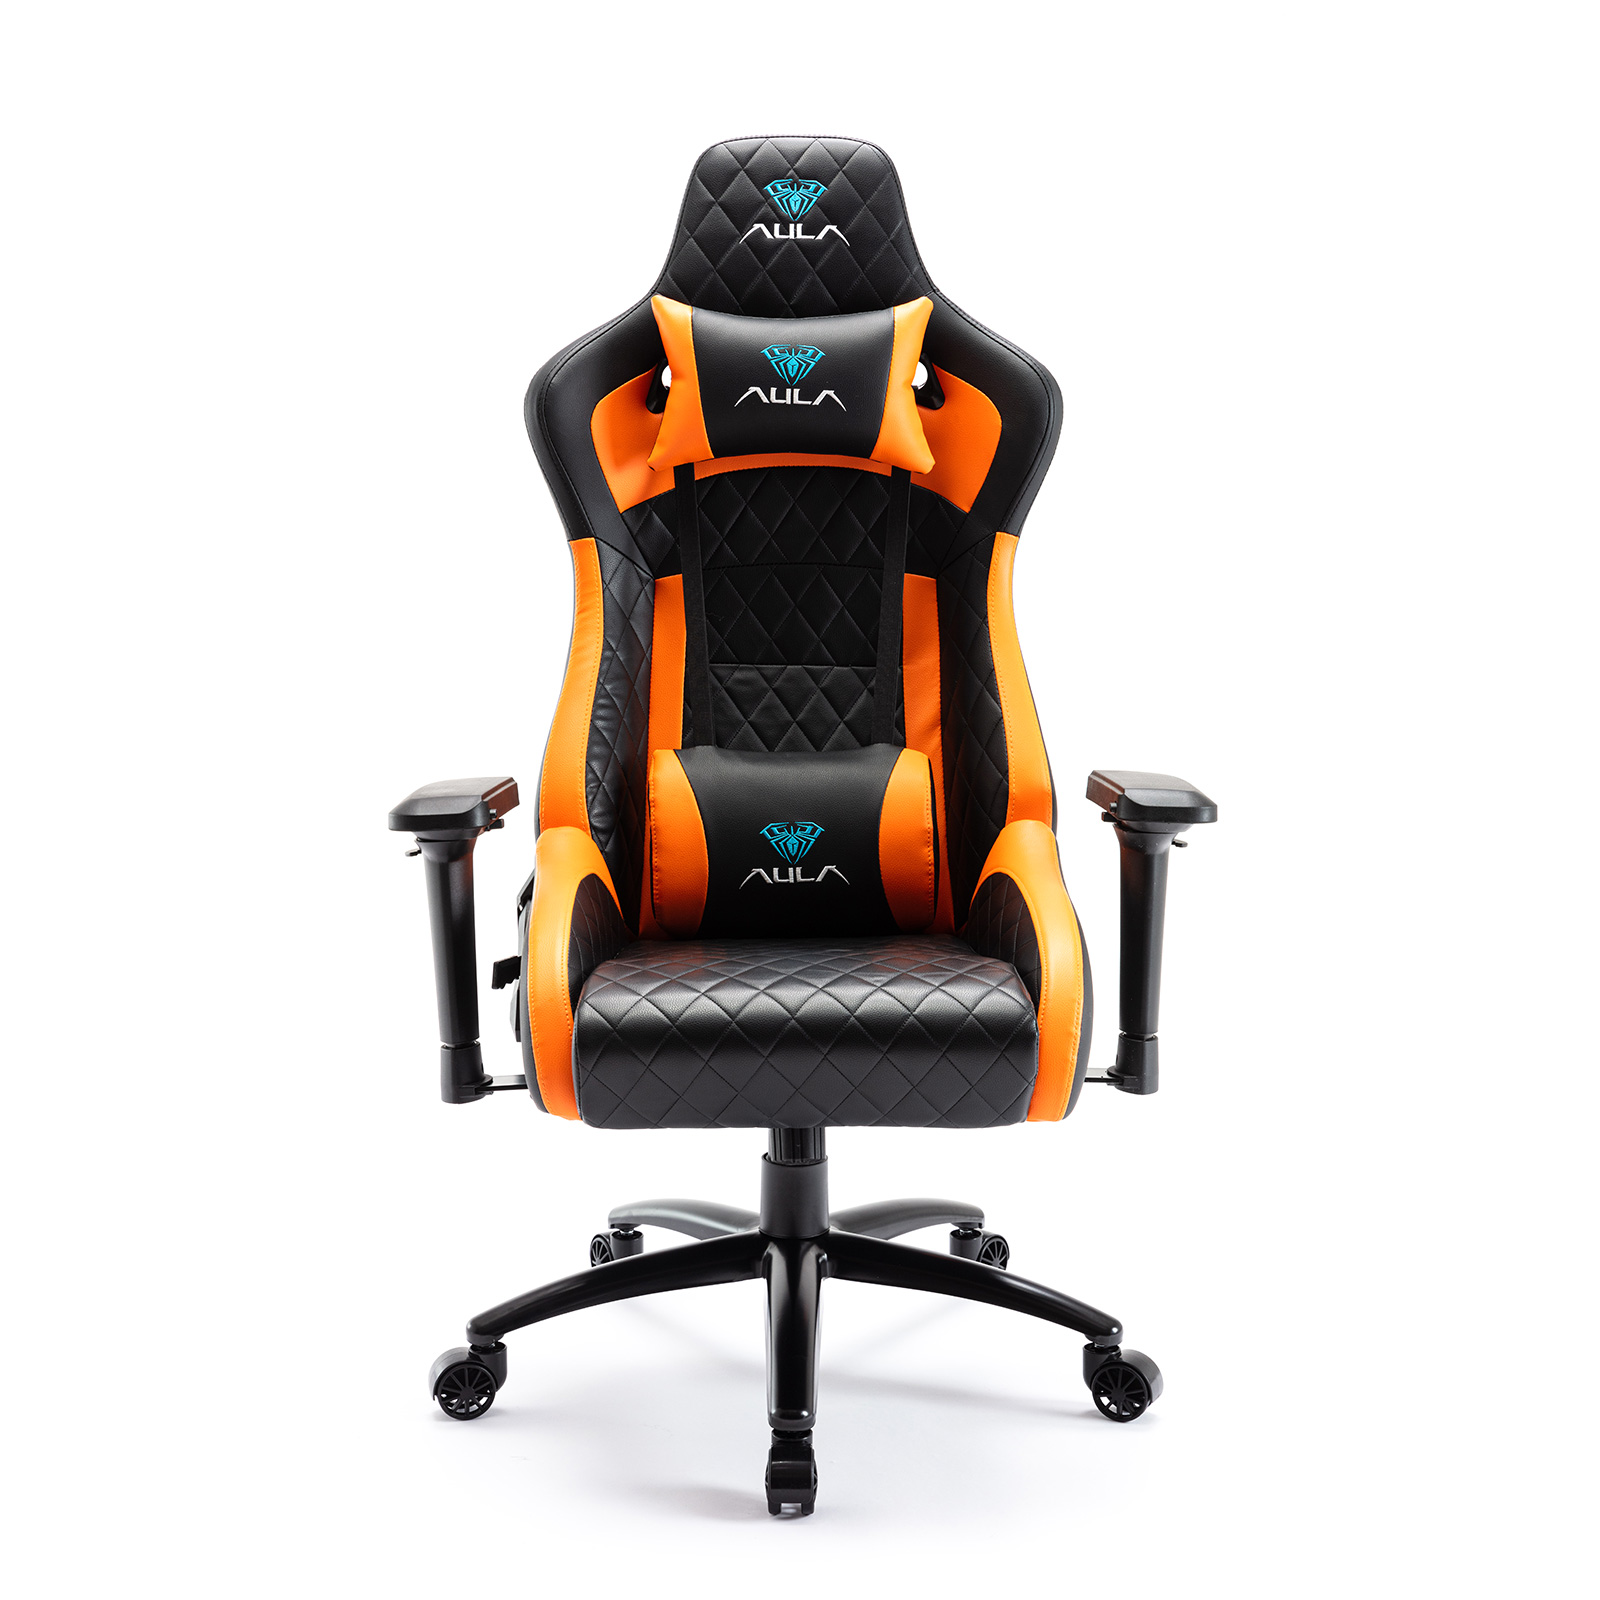 AULA Gaming Chair F1031-UKR 4D Armrest E